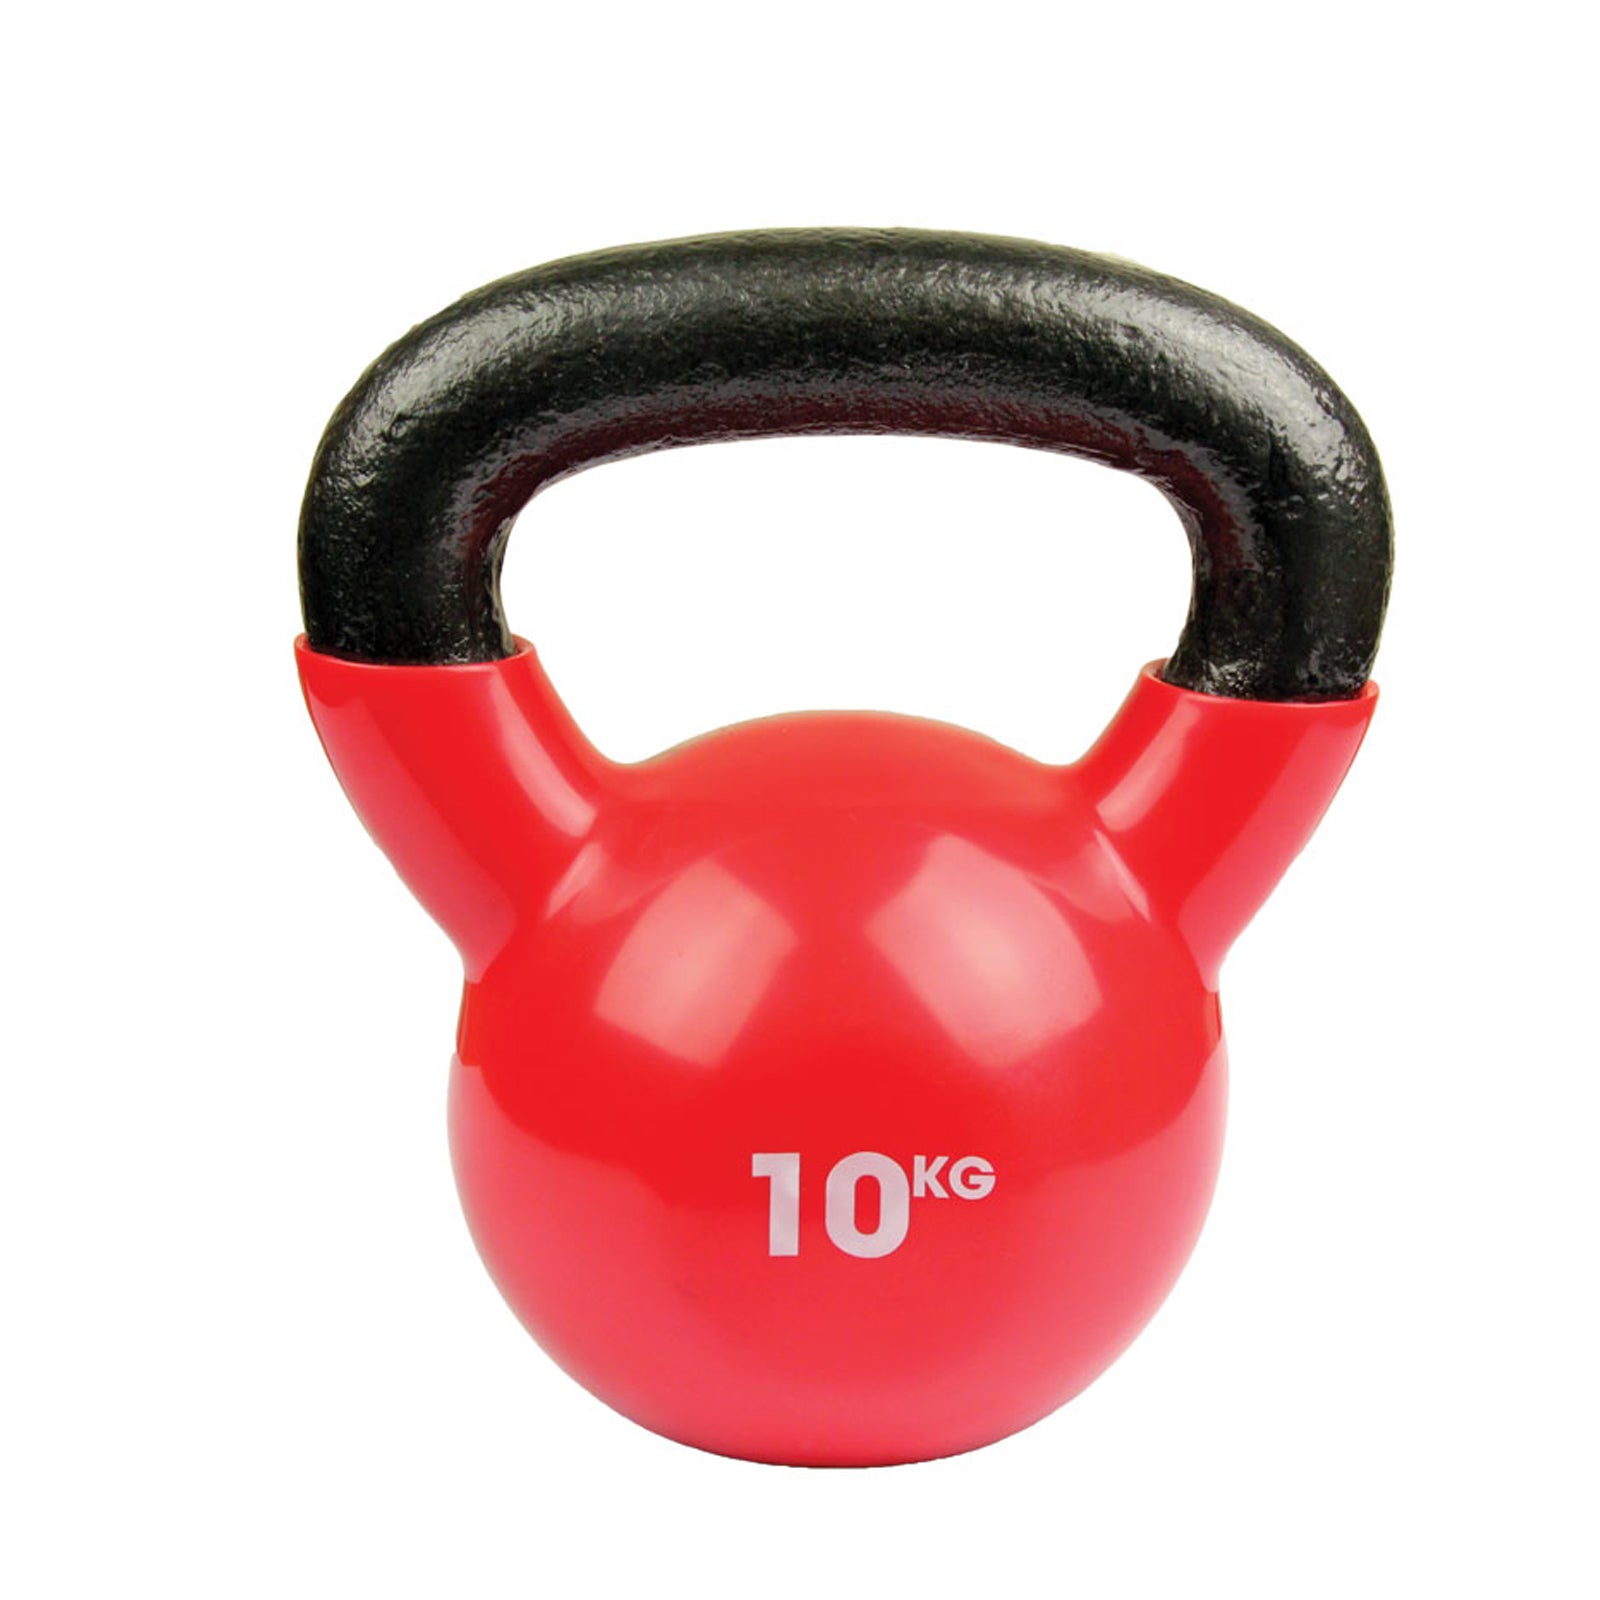 Fitness MAD 10kg Kettlebell - 10kg (Raspberry)